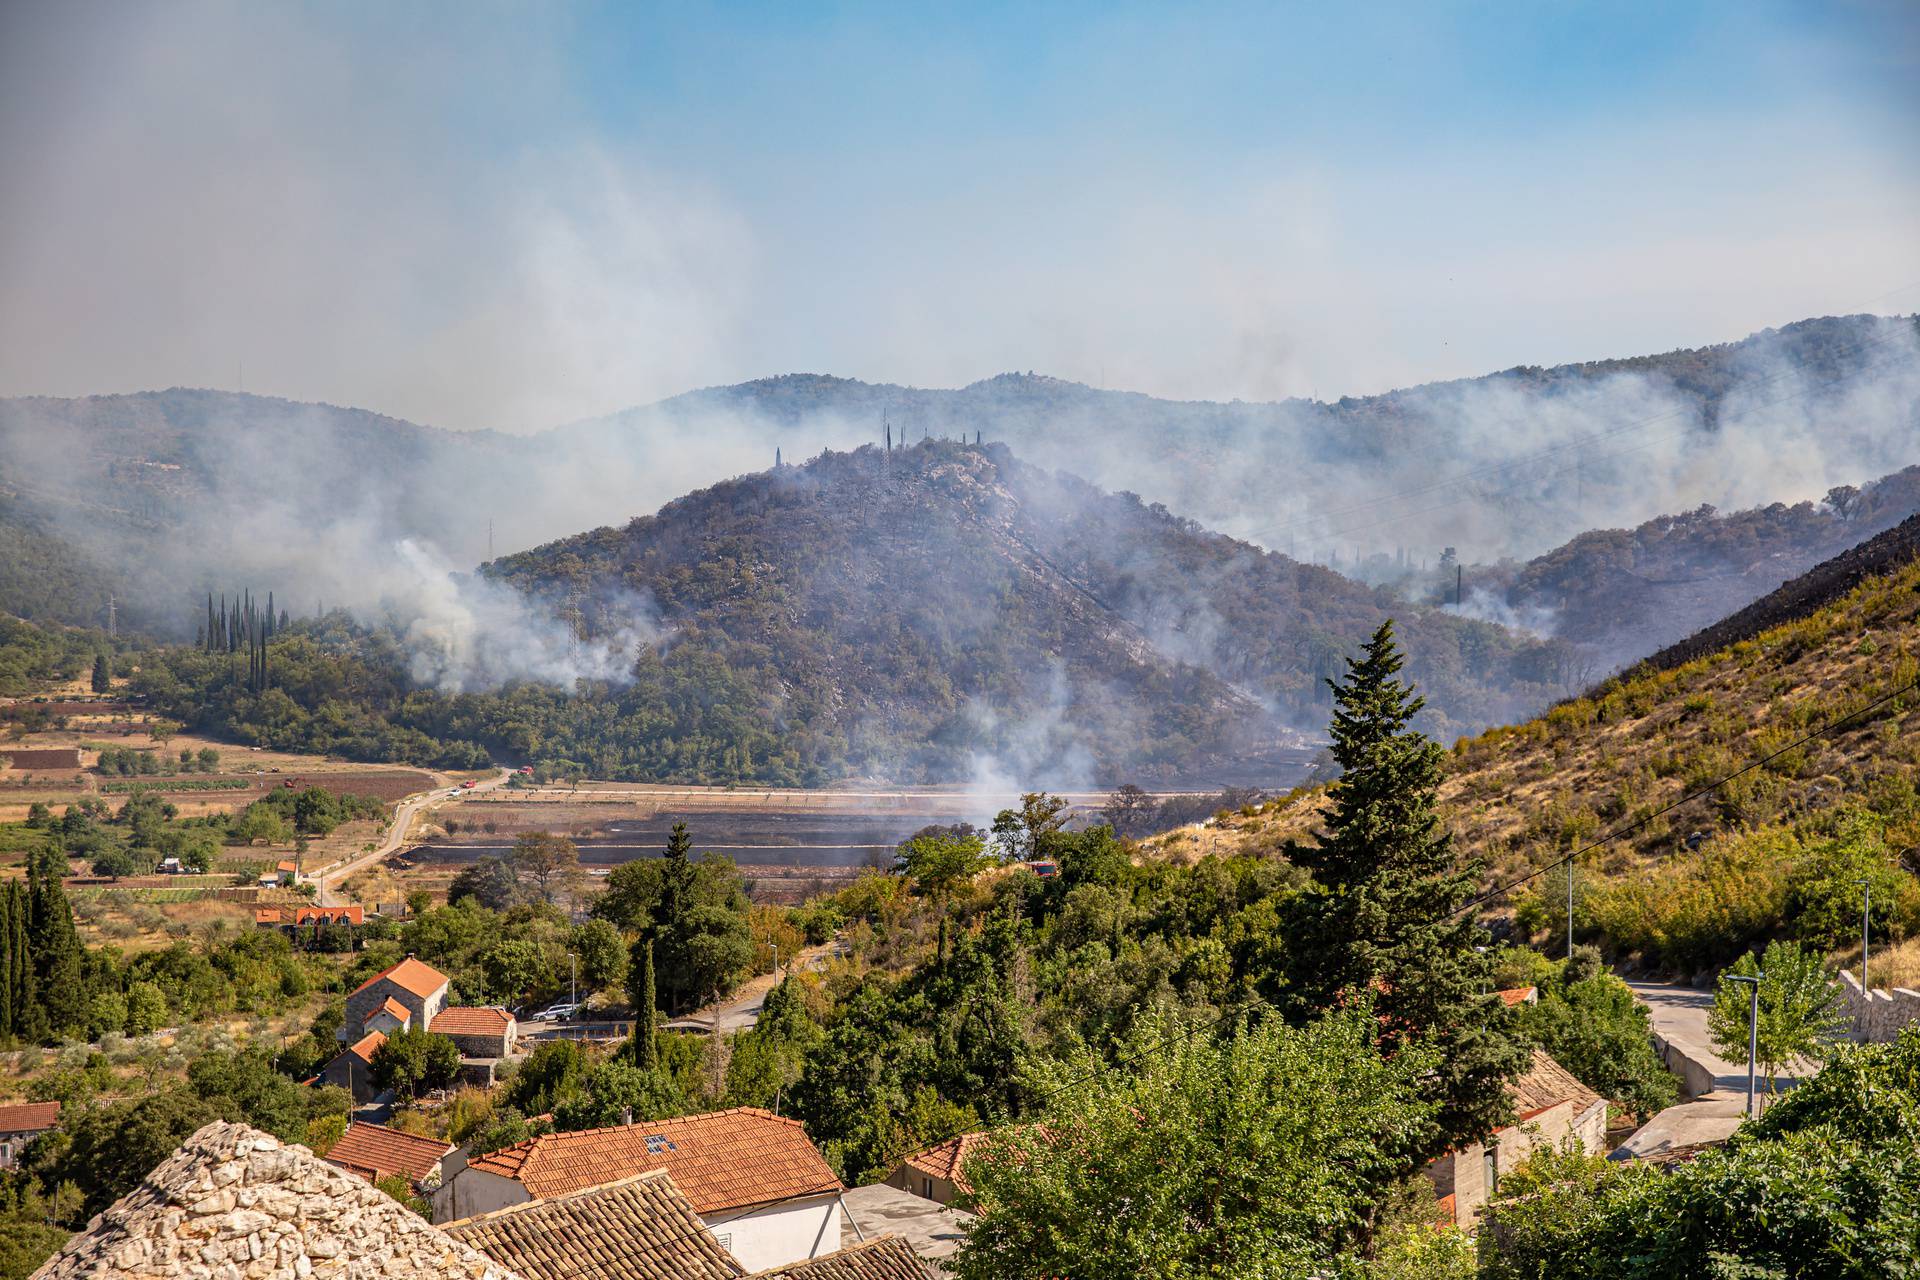 Gori iznad Orašca, vatrogasci uspjeli obraniti kuće u Ljupču, stigla 4 kanadera